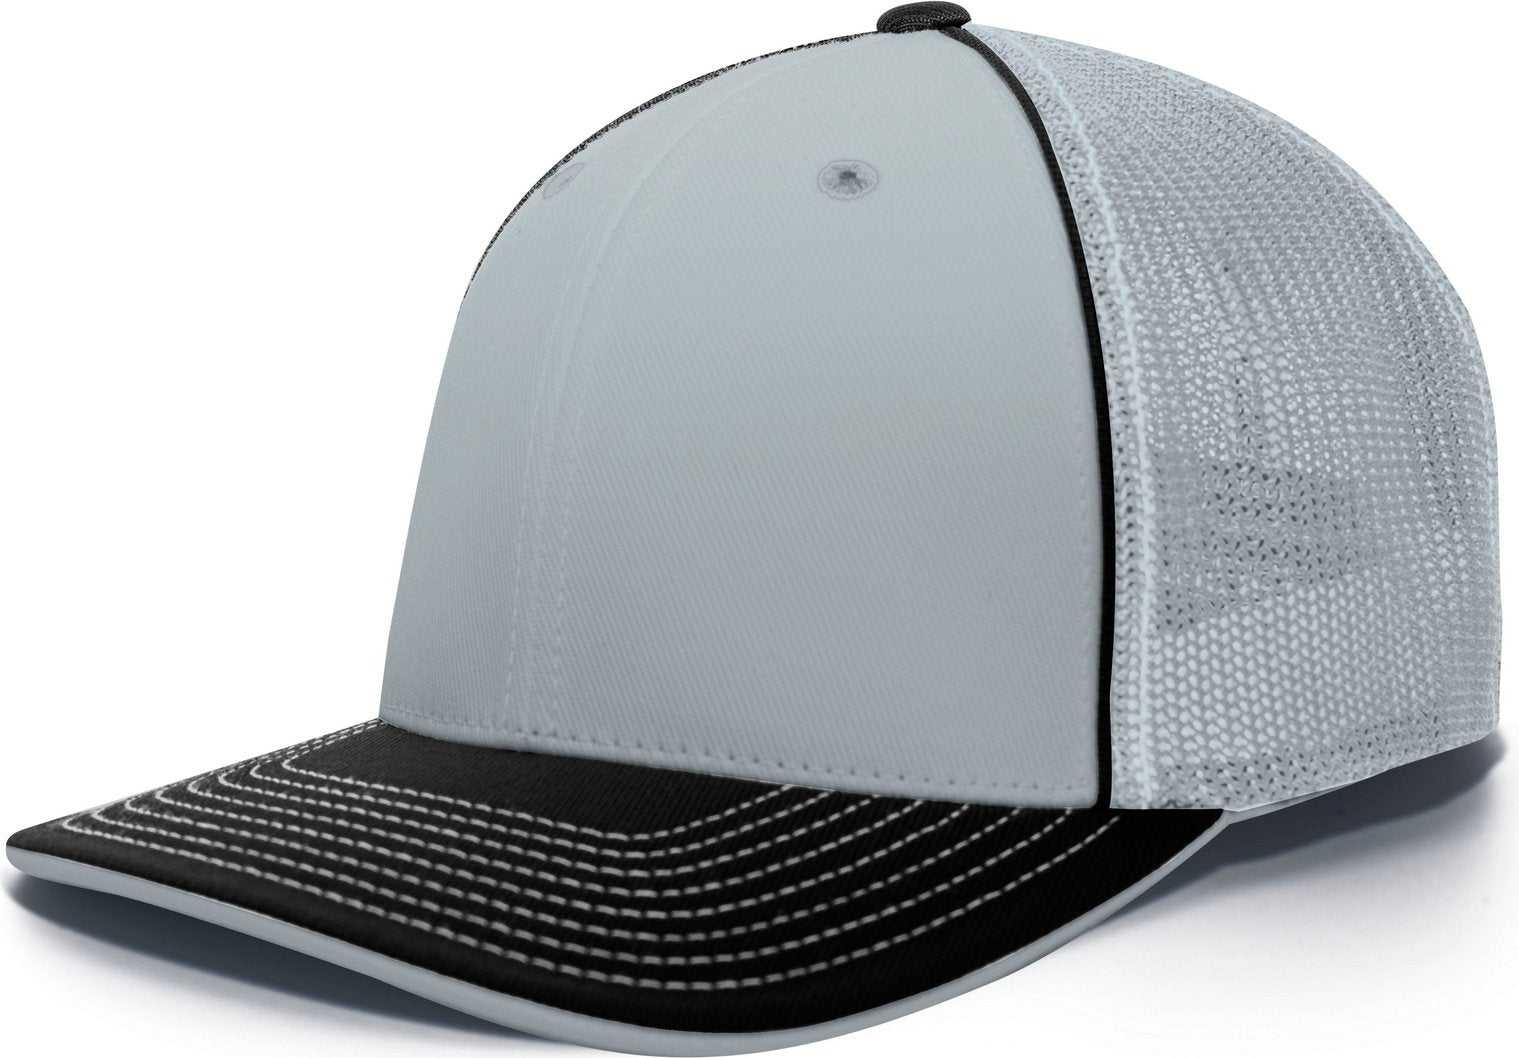 Pacific Headwear 404M Trucker Flexfit Cap - Silver Black - HIT a Double